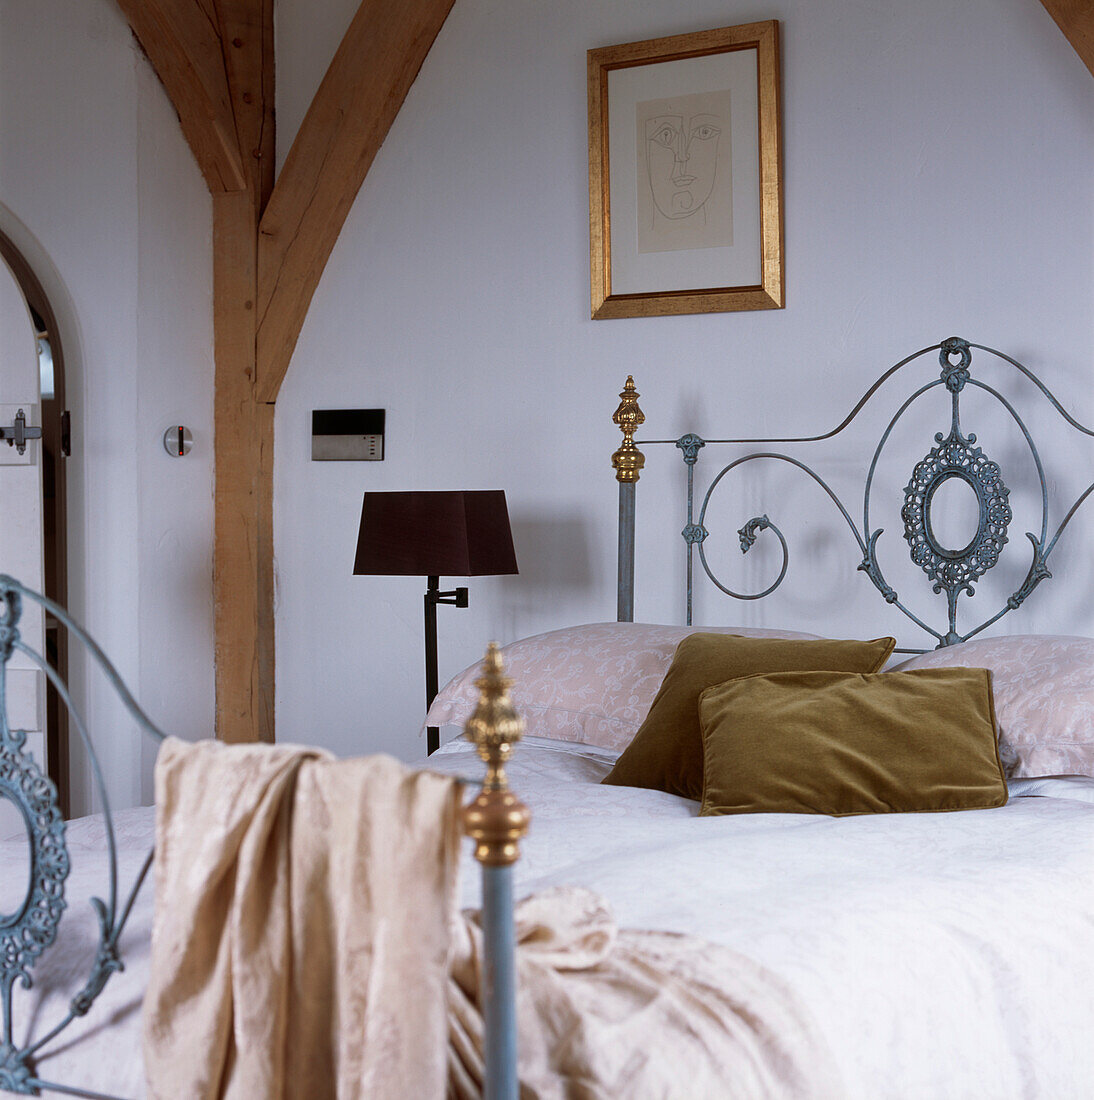 Modernes Schlafzimmer im Landhausstil mit verschnörkeltem gusseisernem Doppelbett mit Bettzeug und Kissen